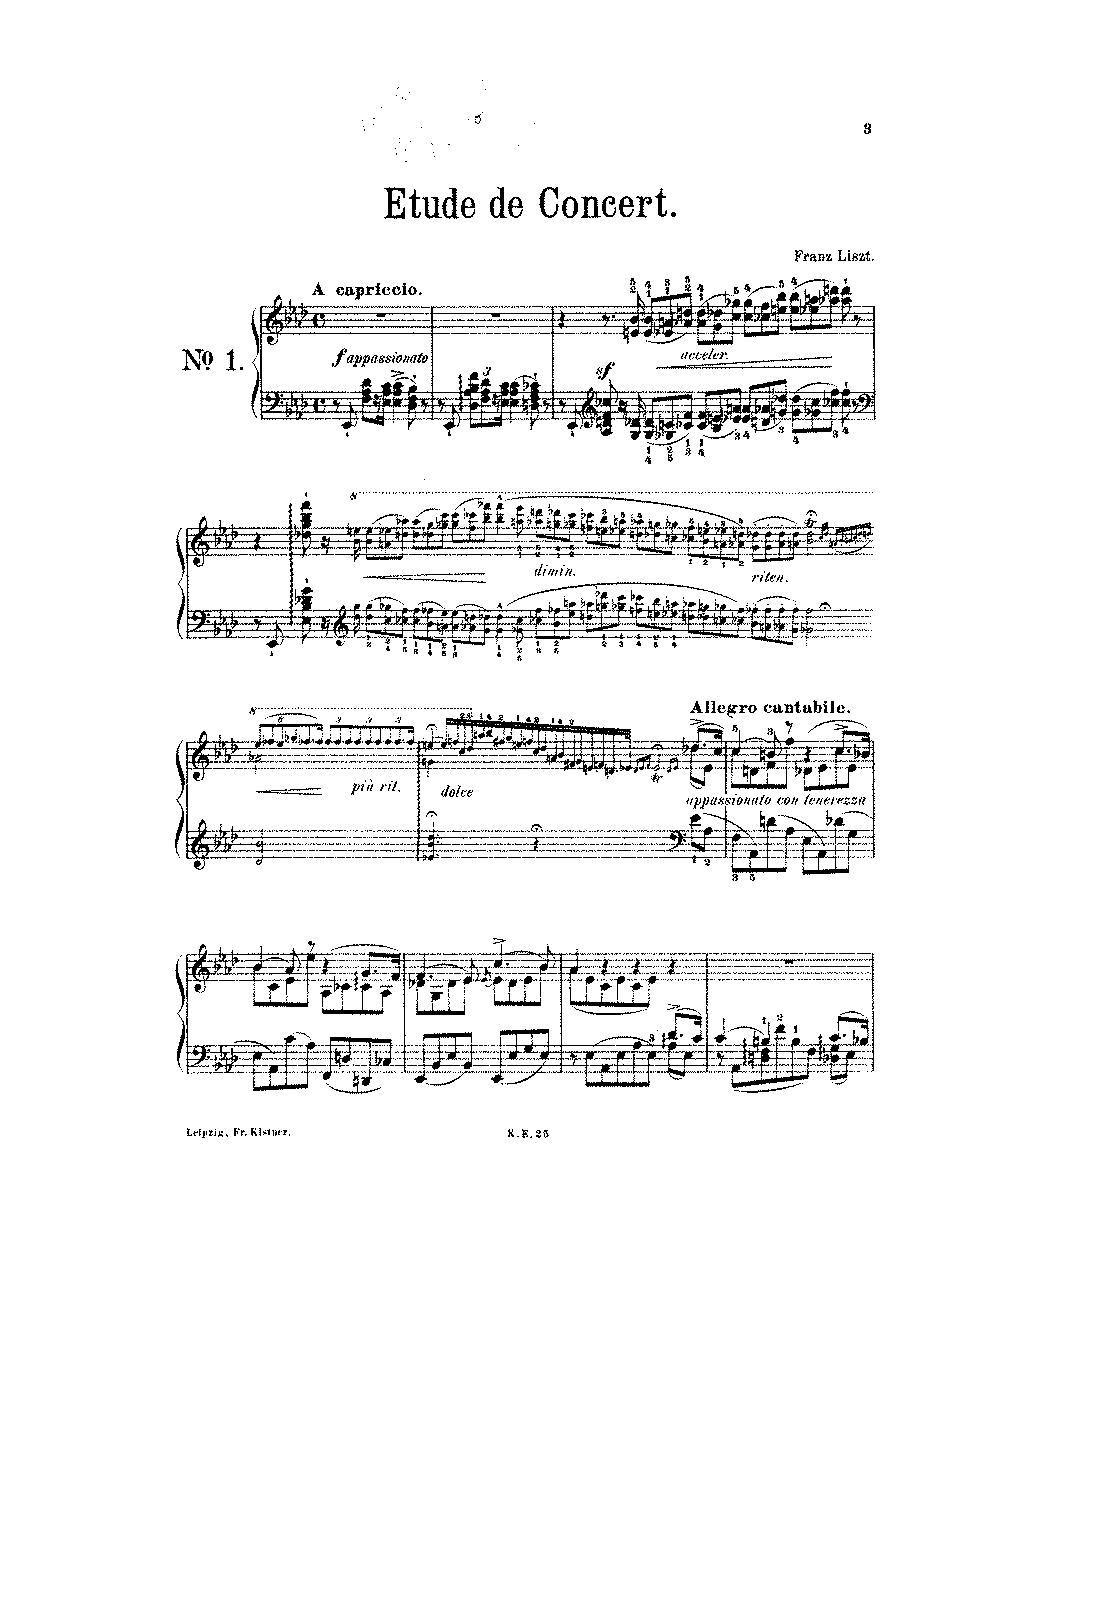 3 Études de concert, S.144 (Liszt, Franz) - IMSLP